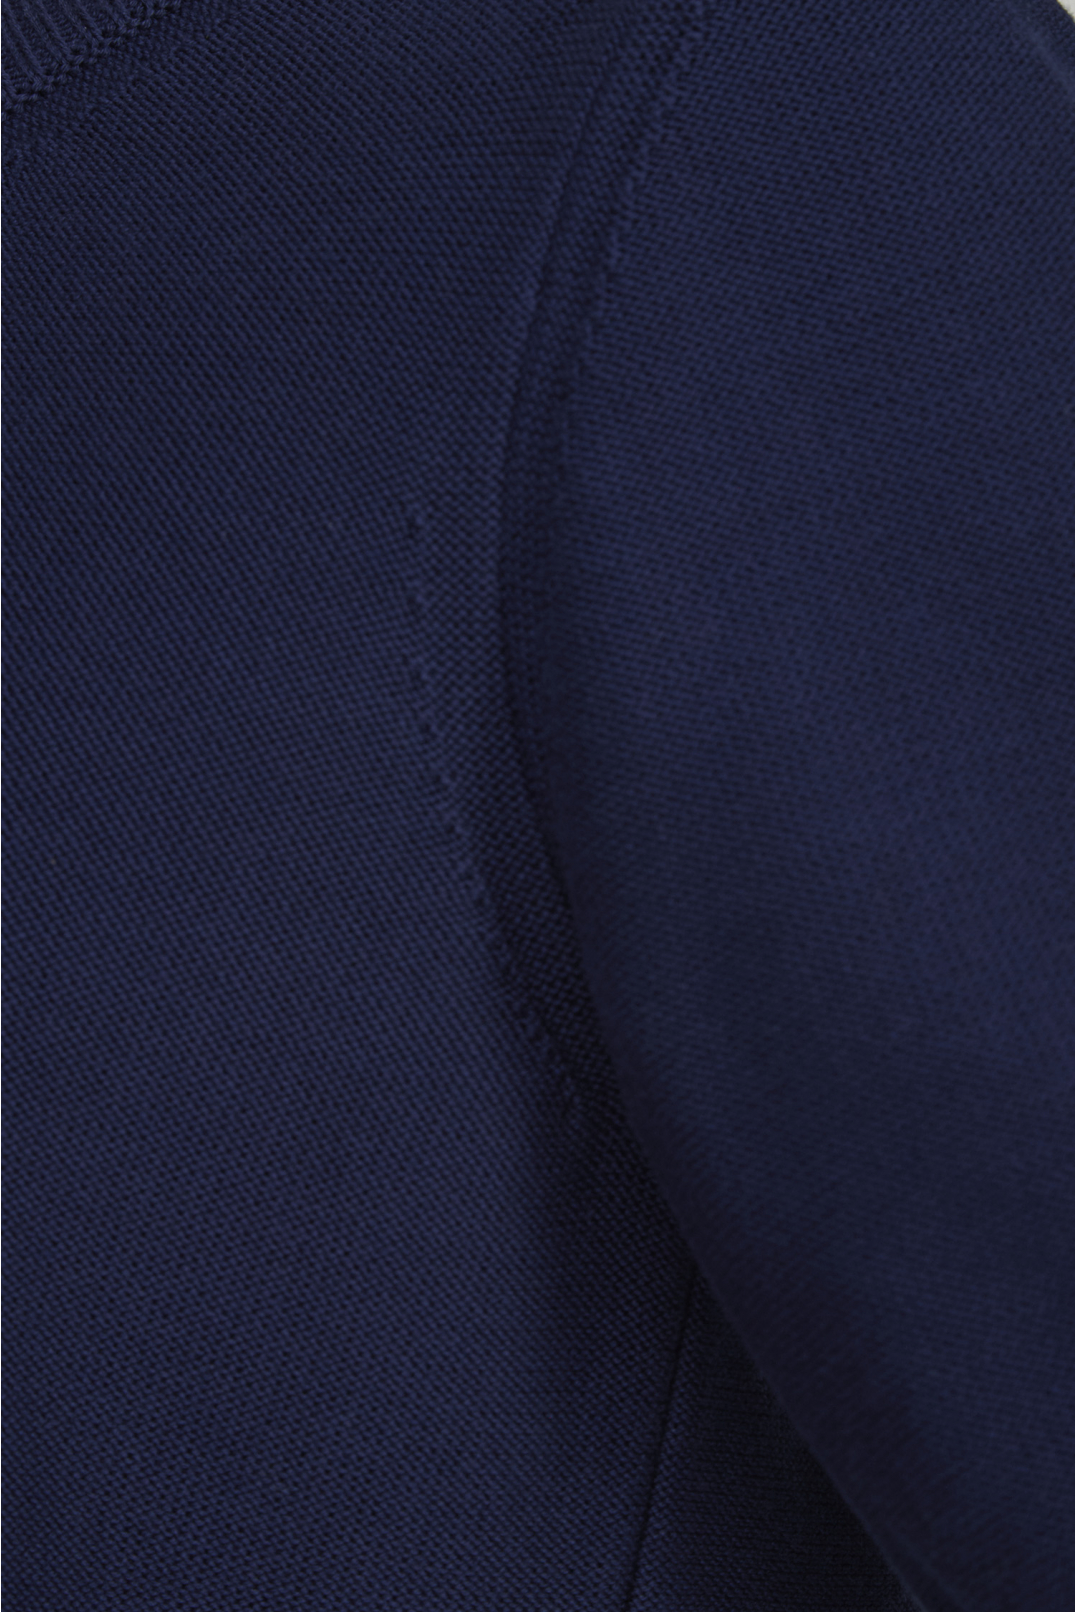 Жіночий темно-синій джемпер з коротким рукавом - 4